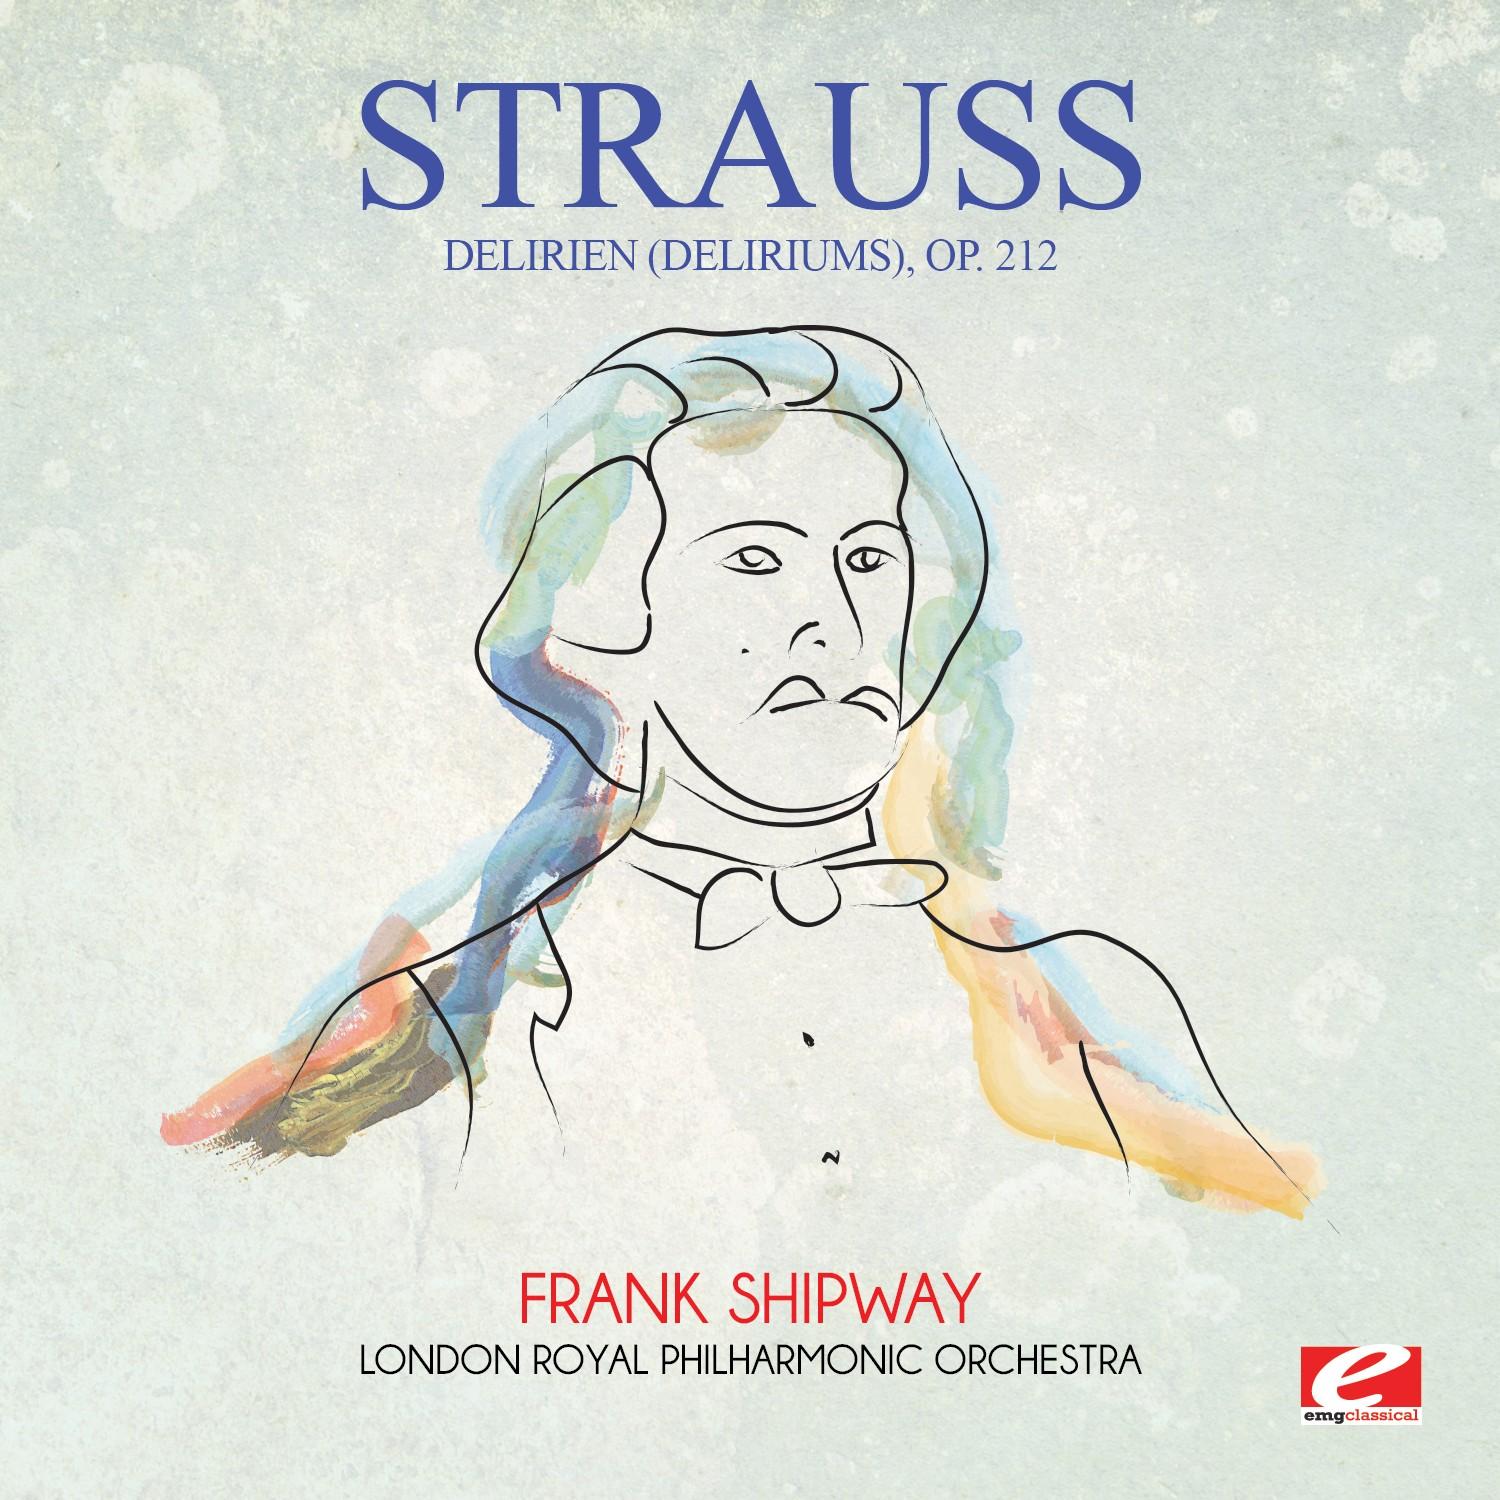 Strauss: Delirien (Deliriums), Op. 212 (Digitally Remastered)